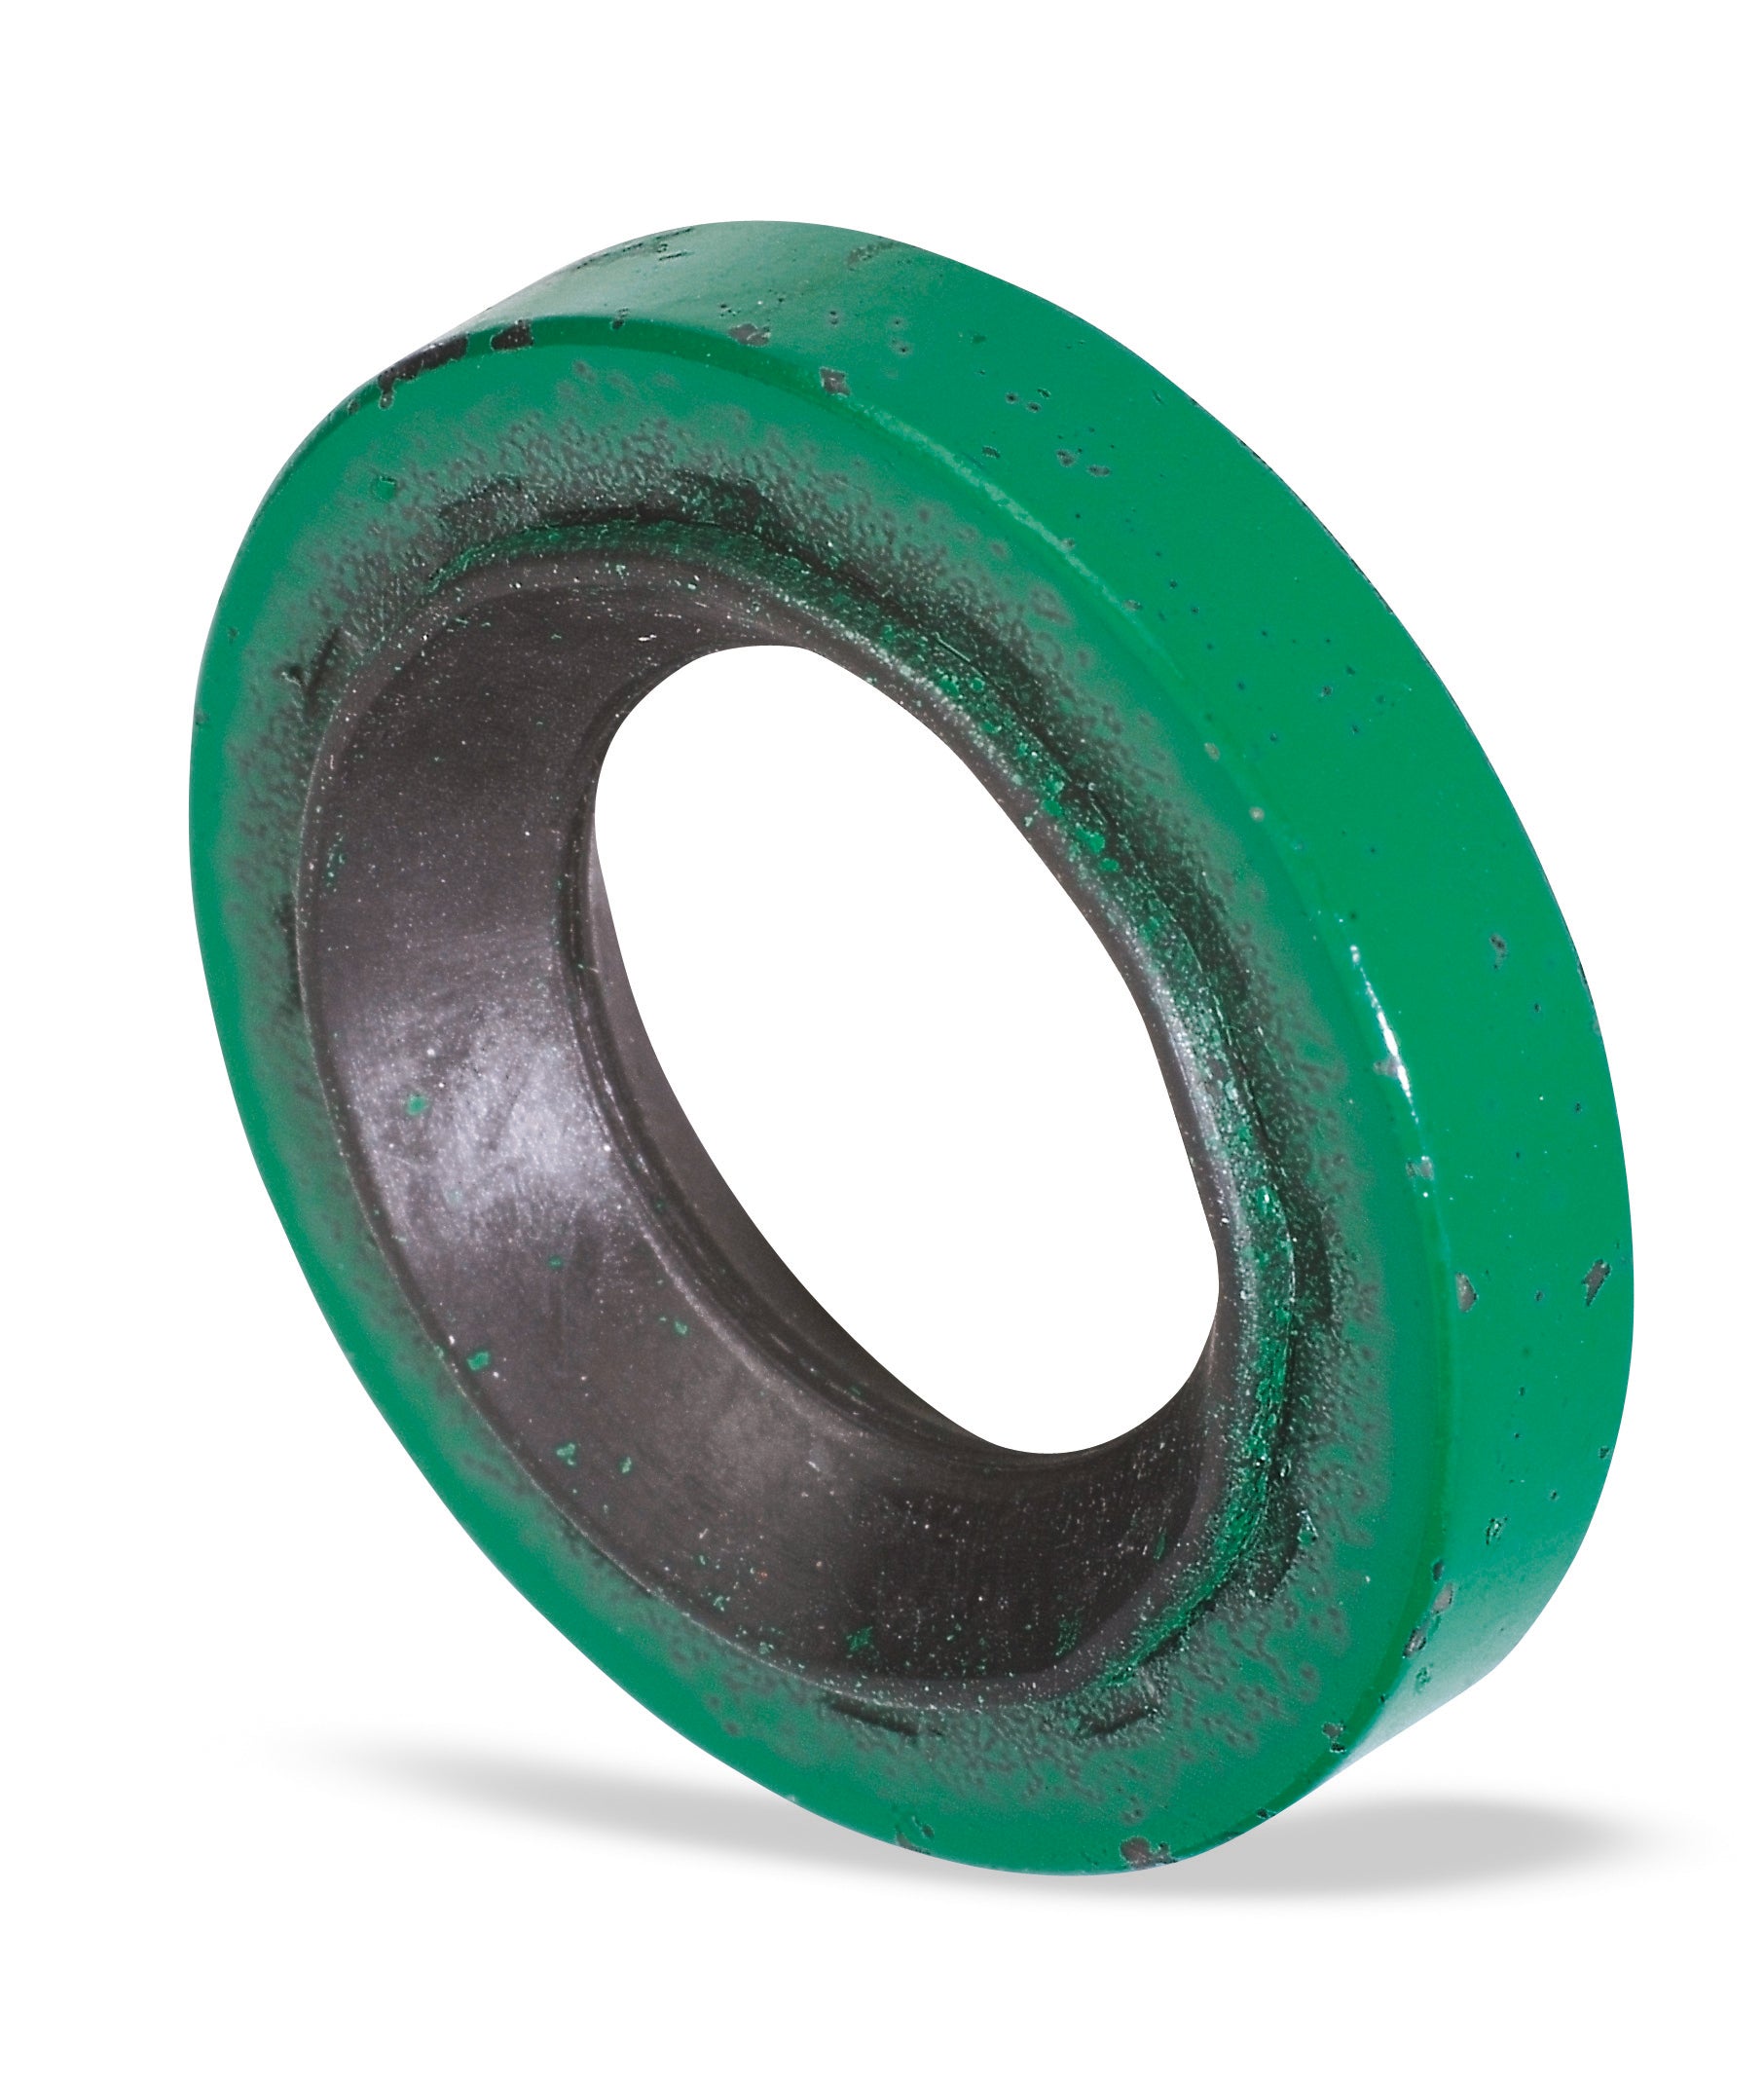 GM Sealing Washer, 5/8 in. Thin Green, 10 PK